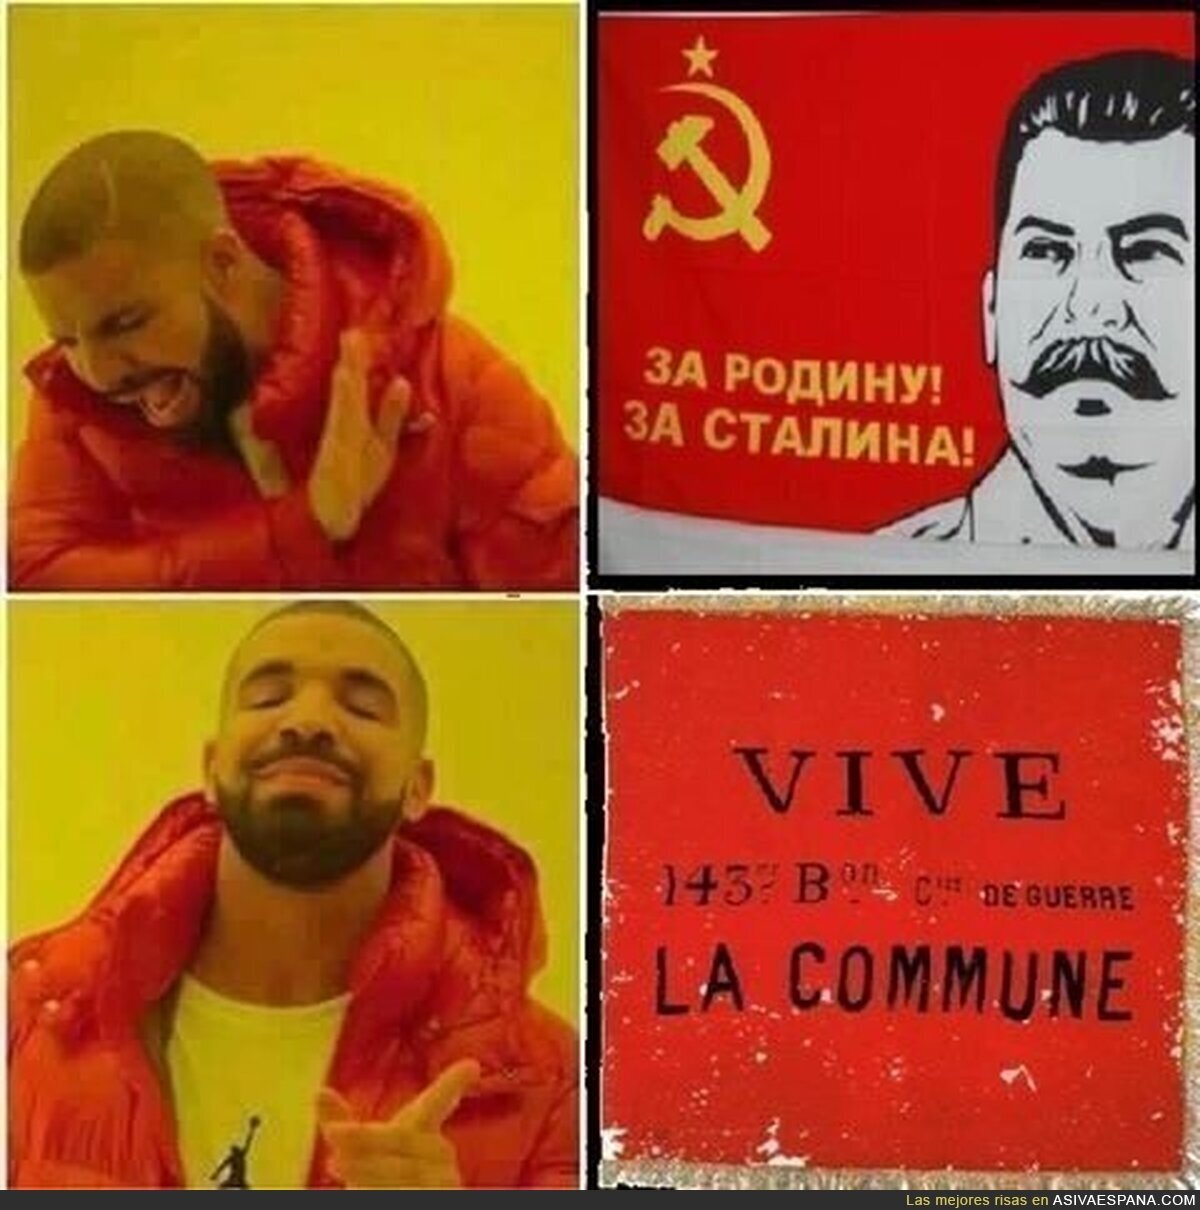 El verdadero comunismo... o anarquismo